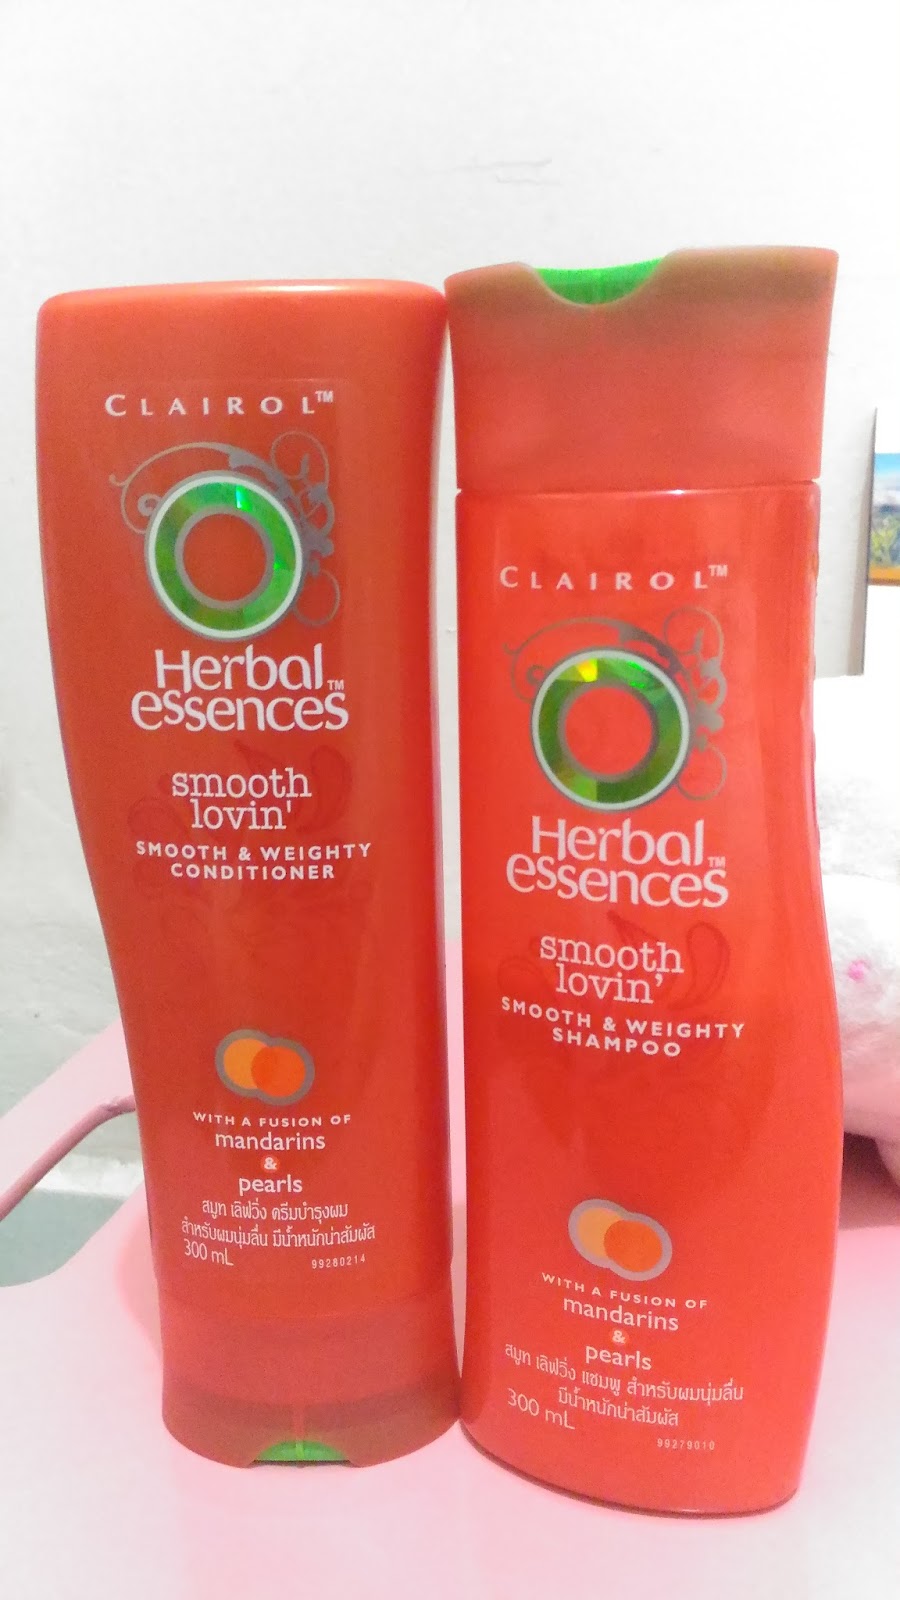 Kelebihan Herbal Essences Shampoo dengan Romero dan Hierbas